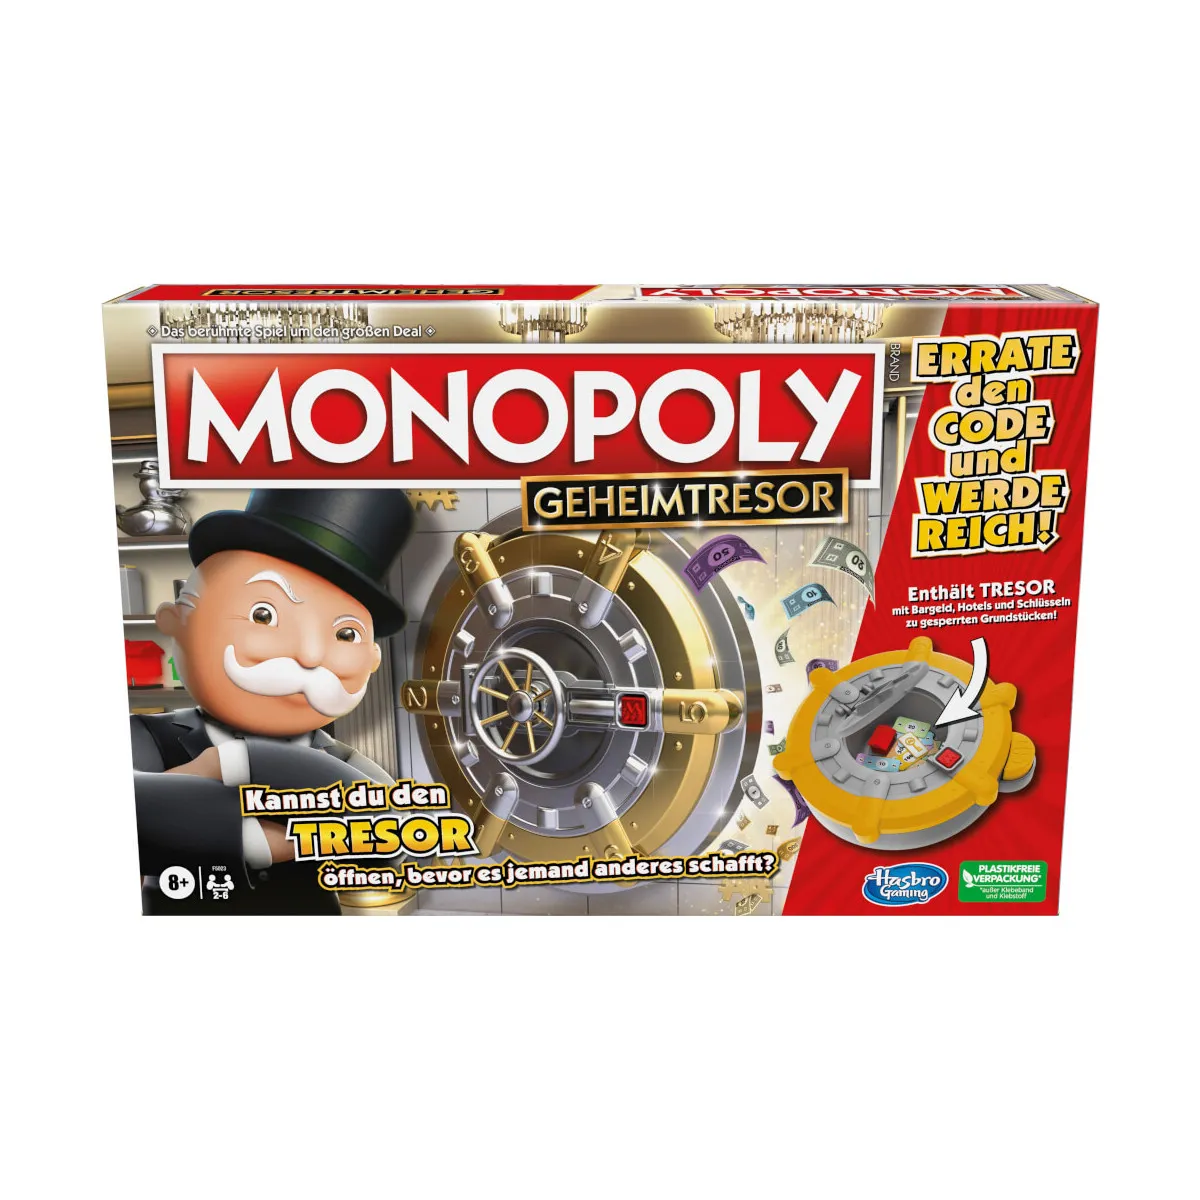 Monopoly Secret Vault F5023100